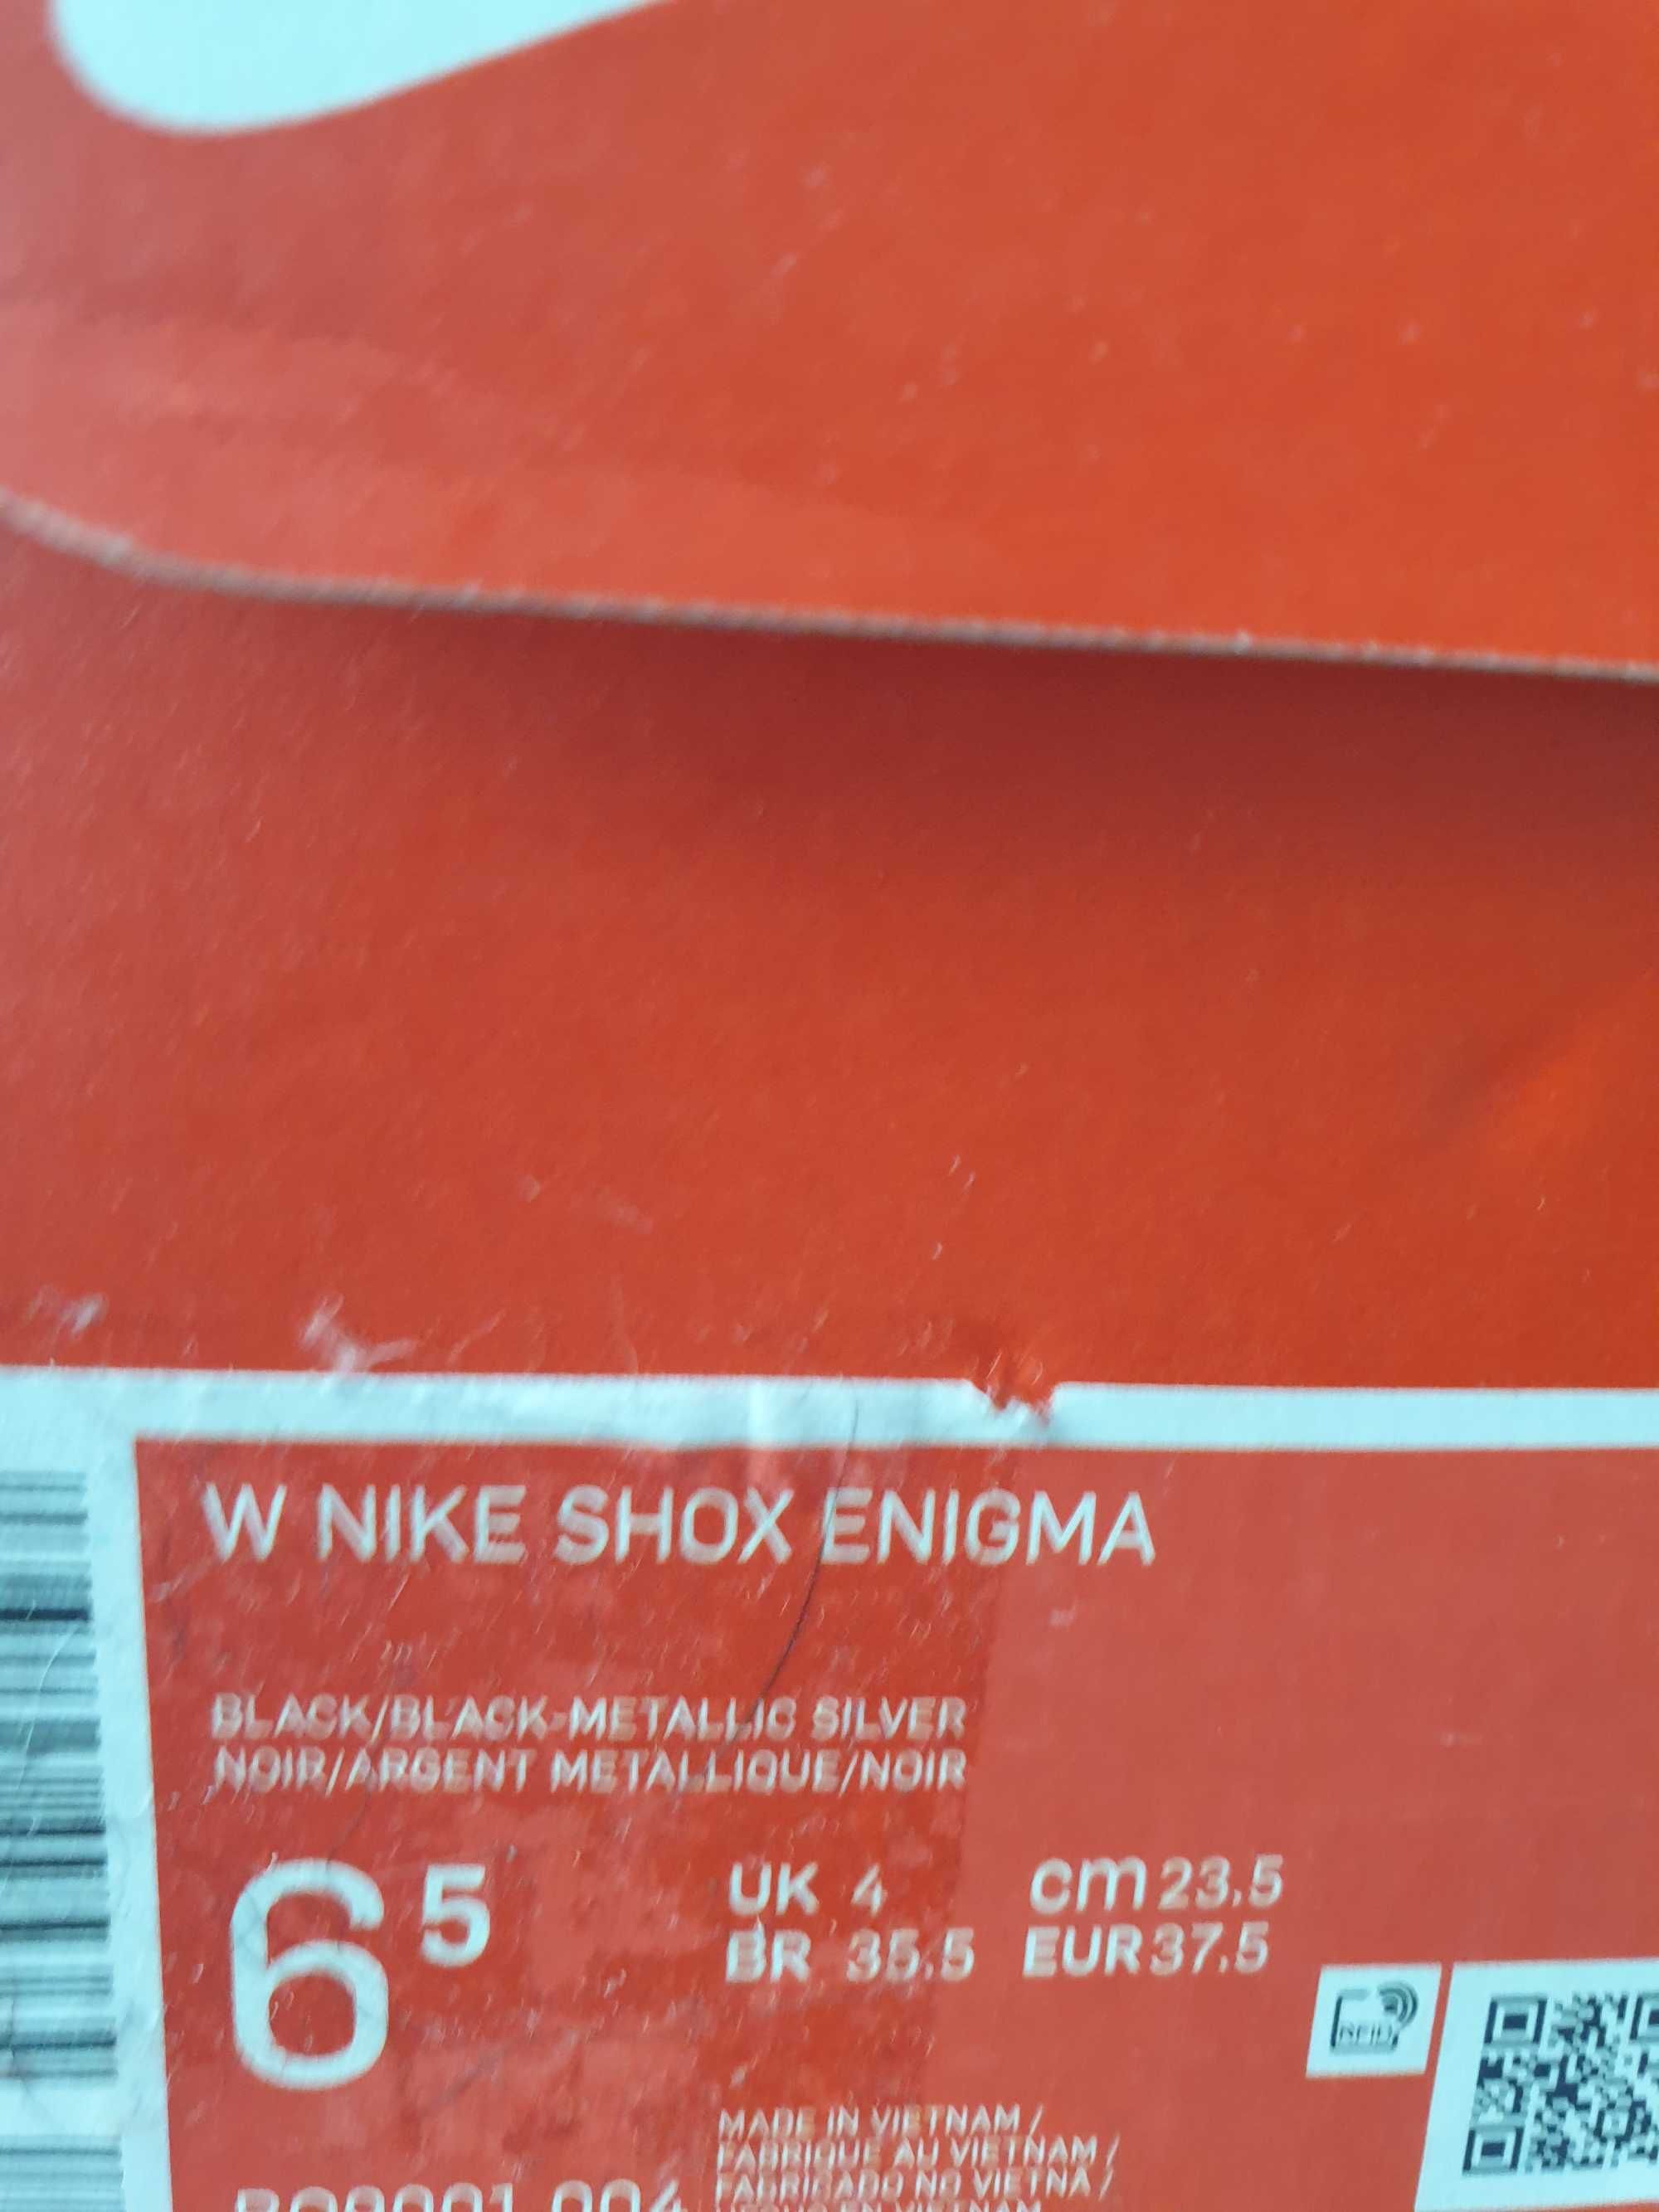 Nike Shox enigma